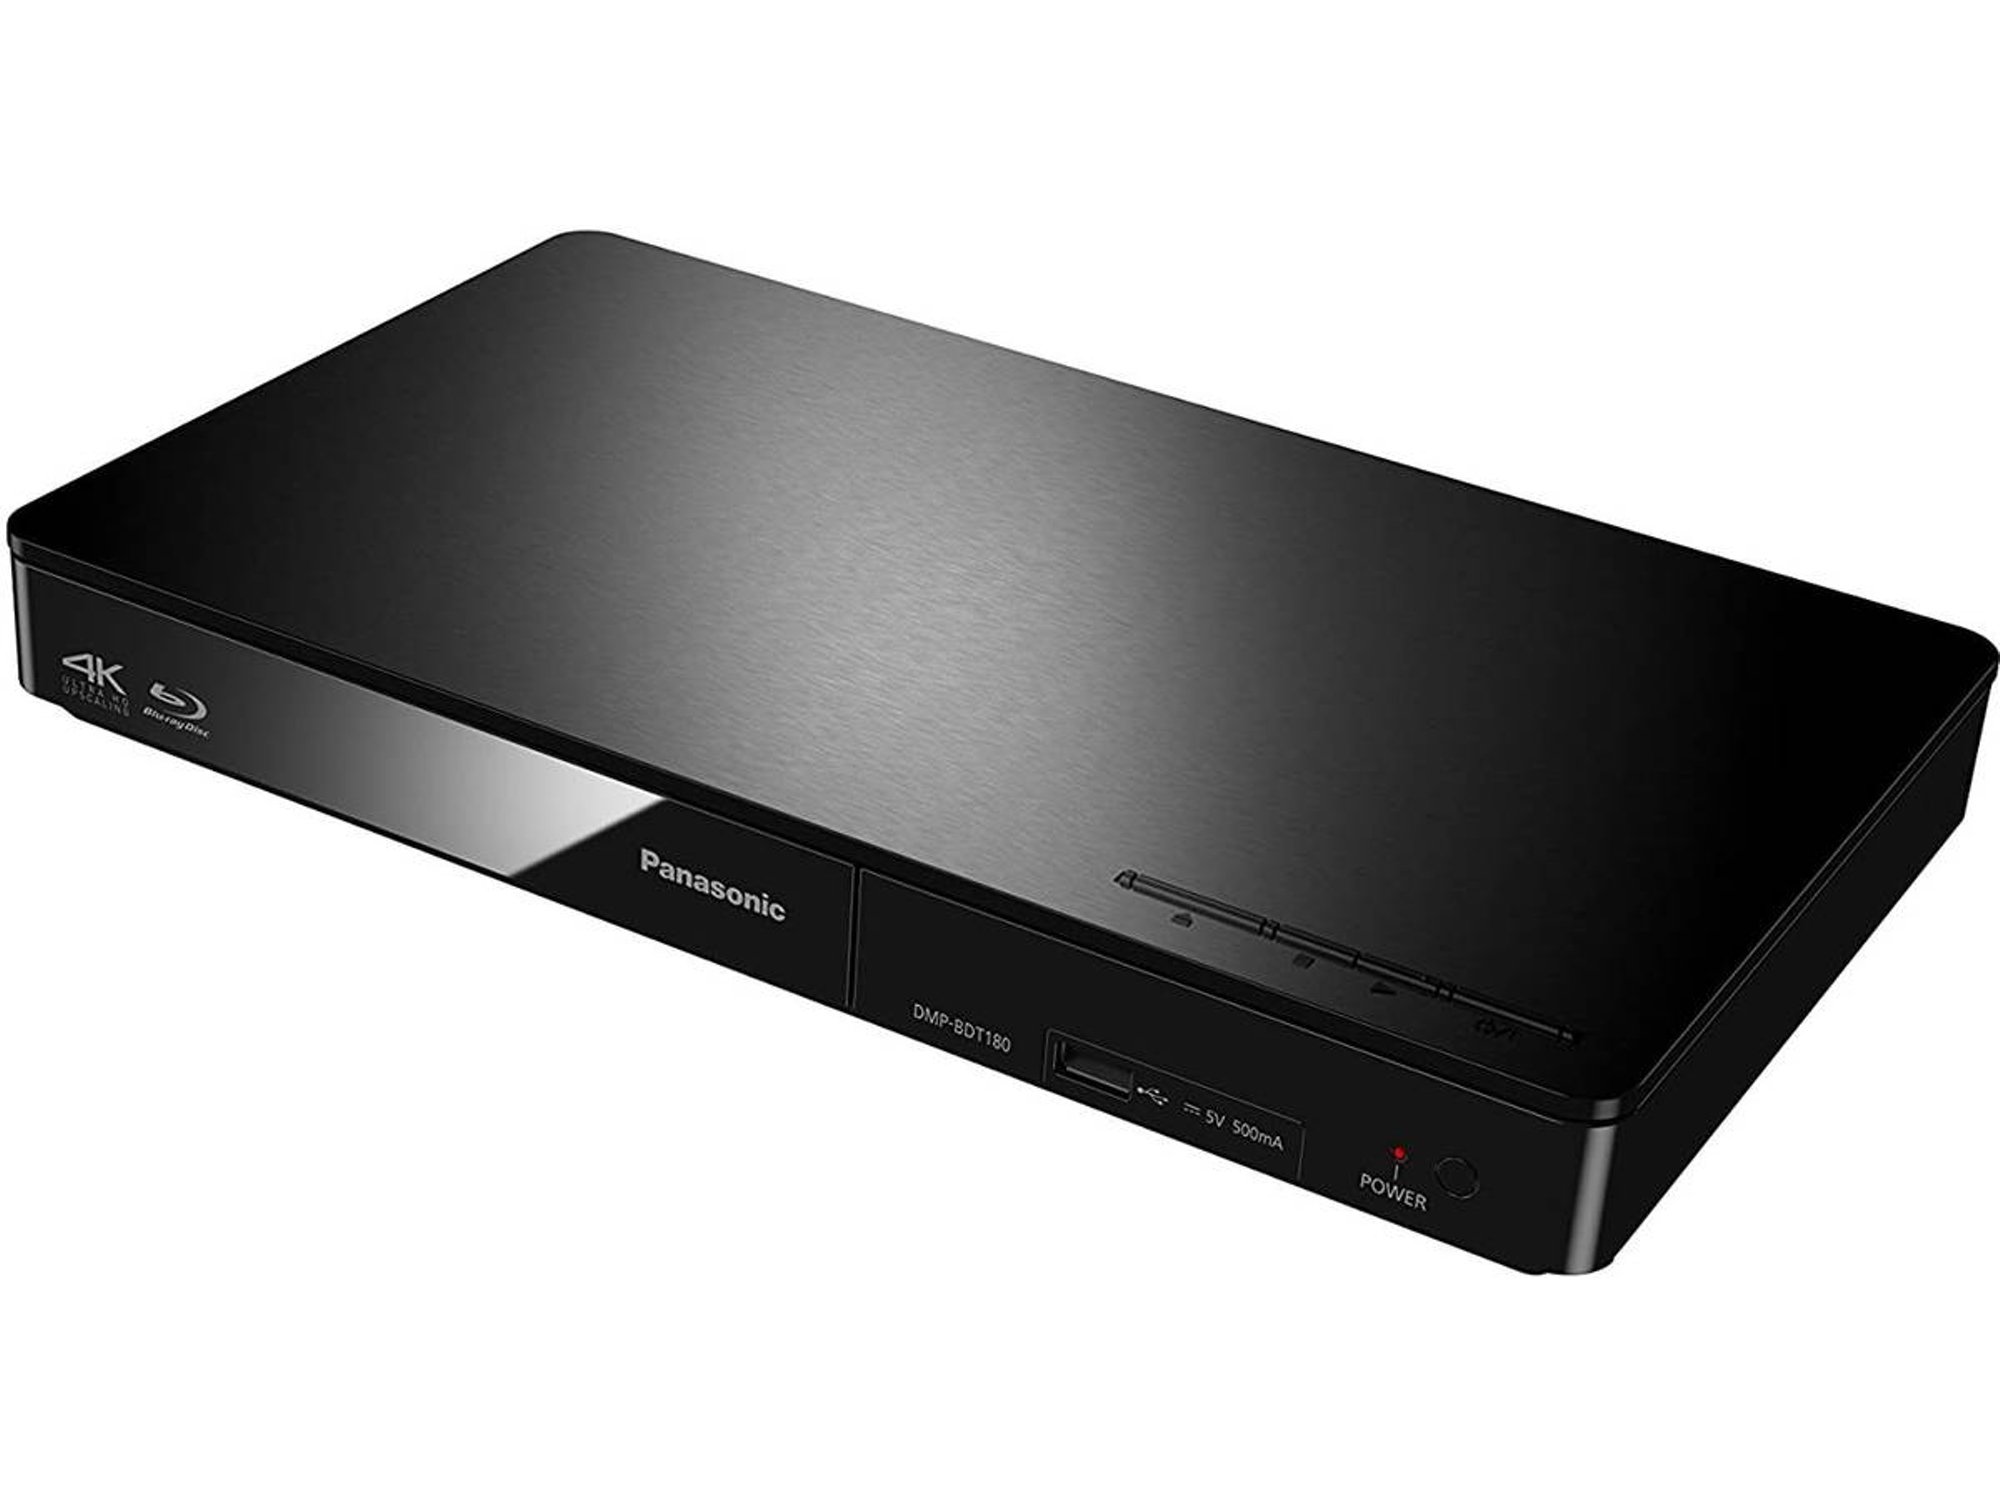 Reproductor Blu-Ray PANASONIC DMP-BDT180EG (USB - HDMI - 4K Ultra HD)